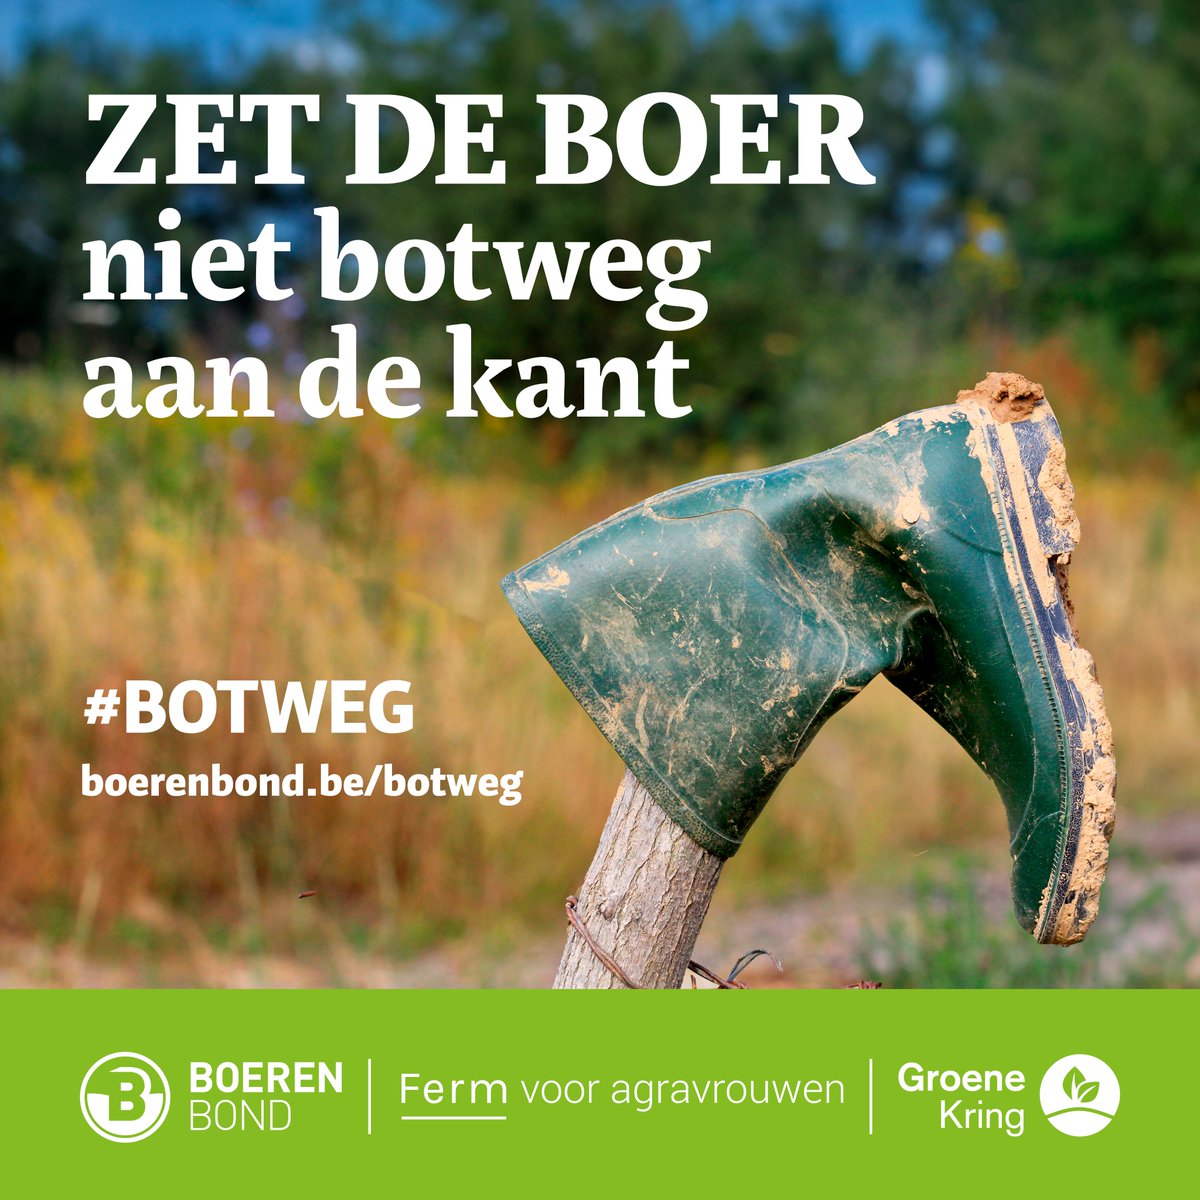 Met de actie ‘Zet de boer niet botweg aan de kant’ komt Boerenbond, samen met @GroeneKring en Ferm voor agravrouwen, op voor de bezorgdheden en frustraties van onze hardwerkende Vlaamse boeren. Meer info over alle geplande acties: boerenbond.be/botweg